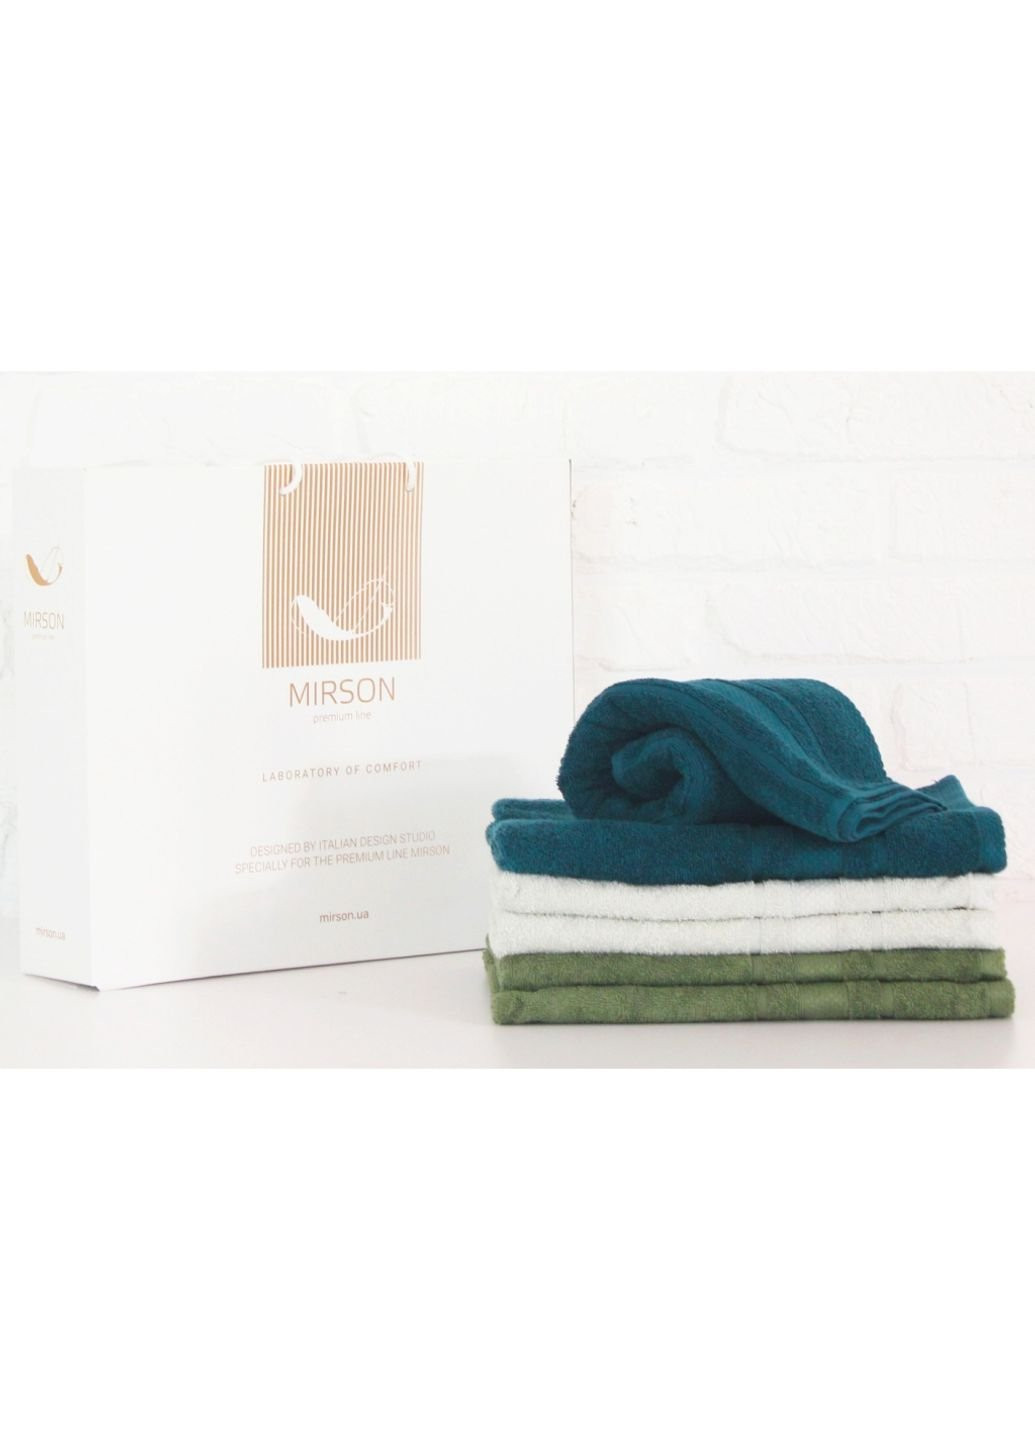 No Brand полотенце mirson набор банных №5095 elite softnes judicious 50х90 6 шт (2200003525021) комбинированный производство - Украина